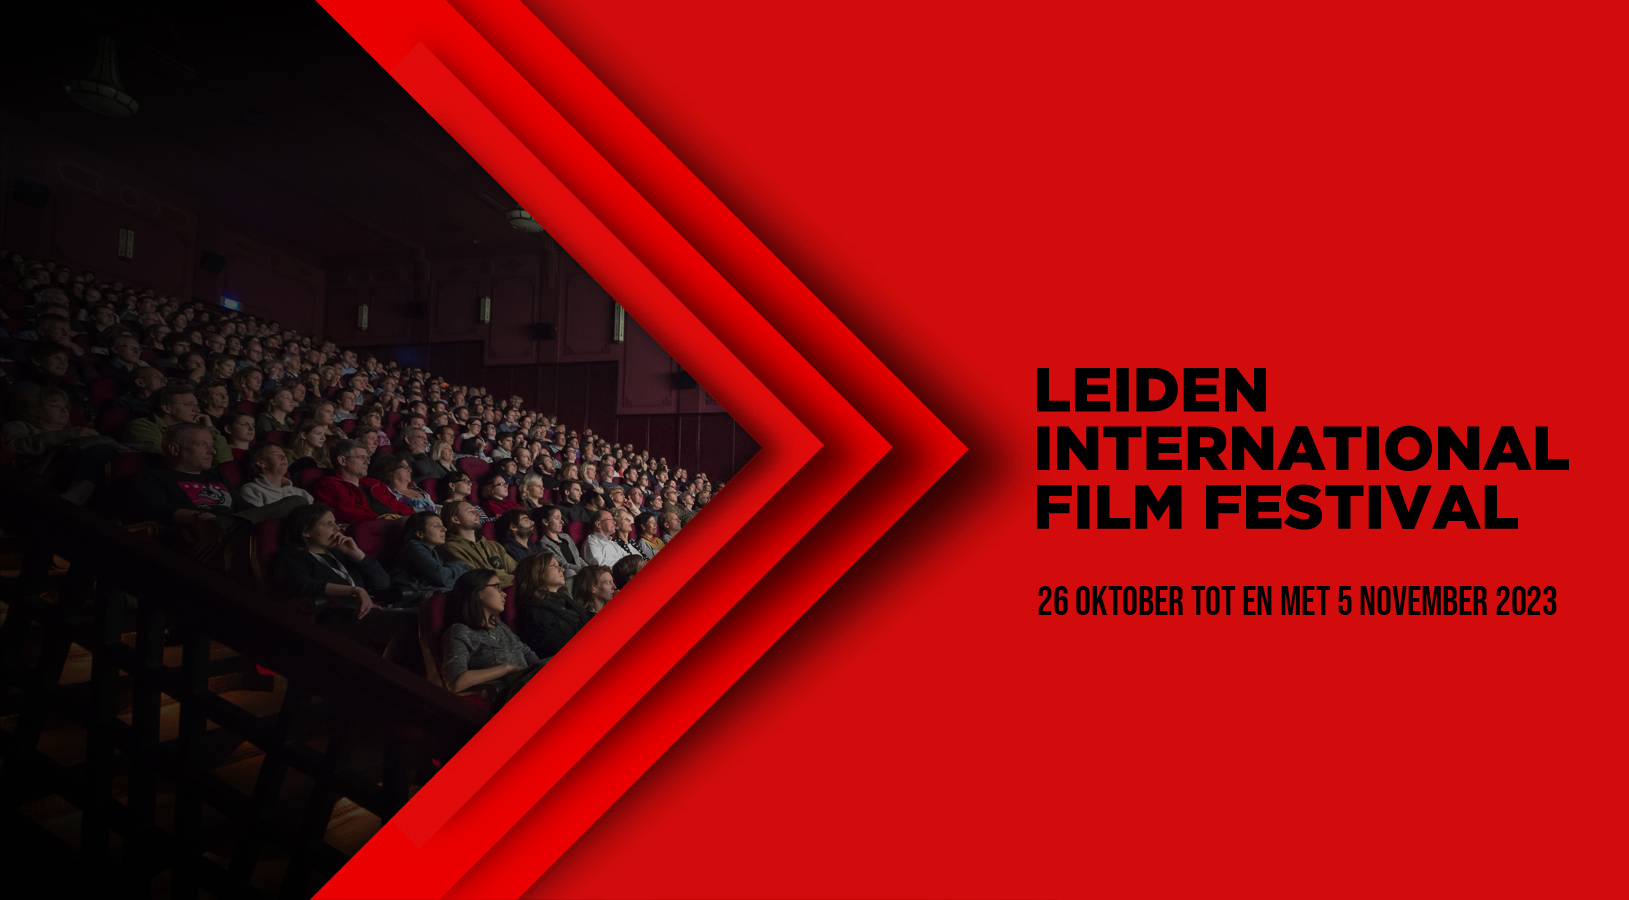 Leiden film festival